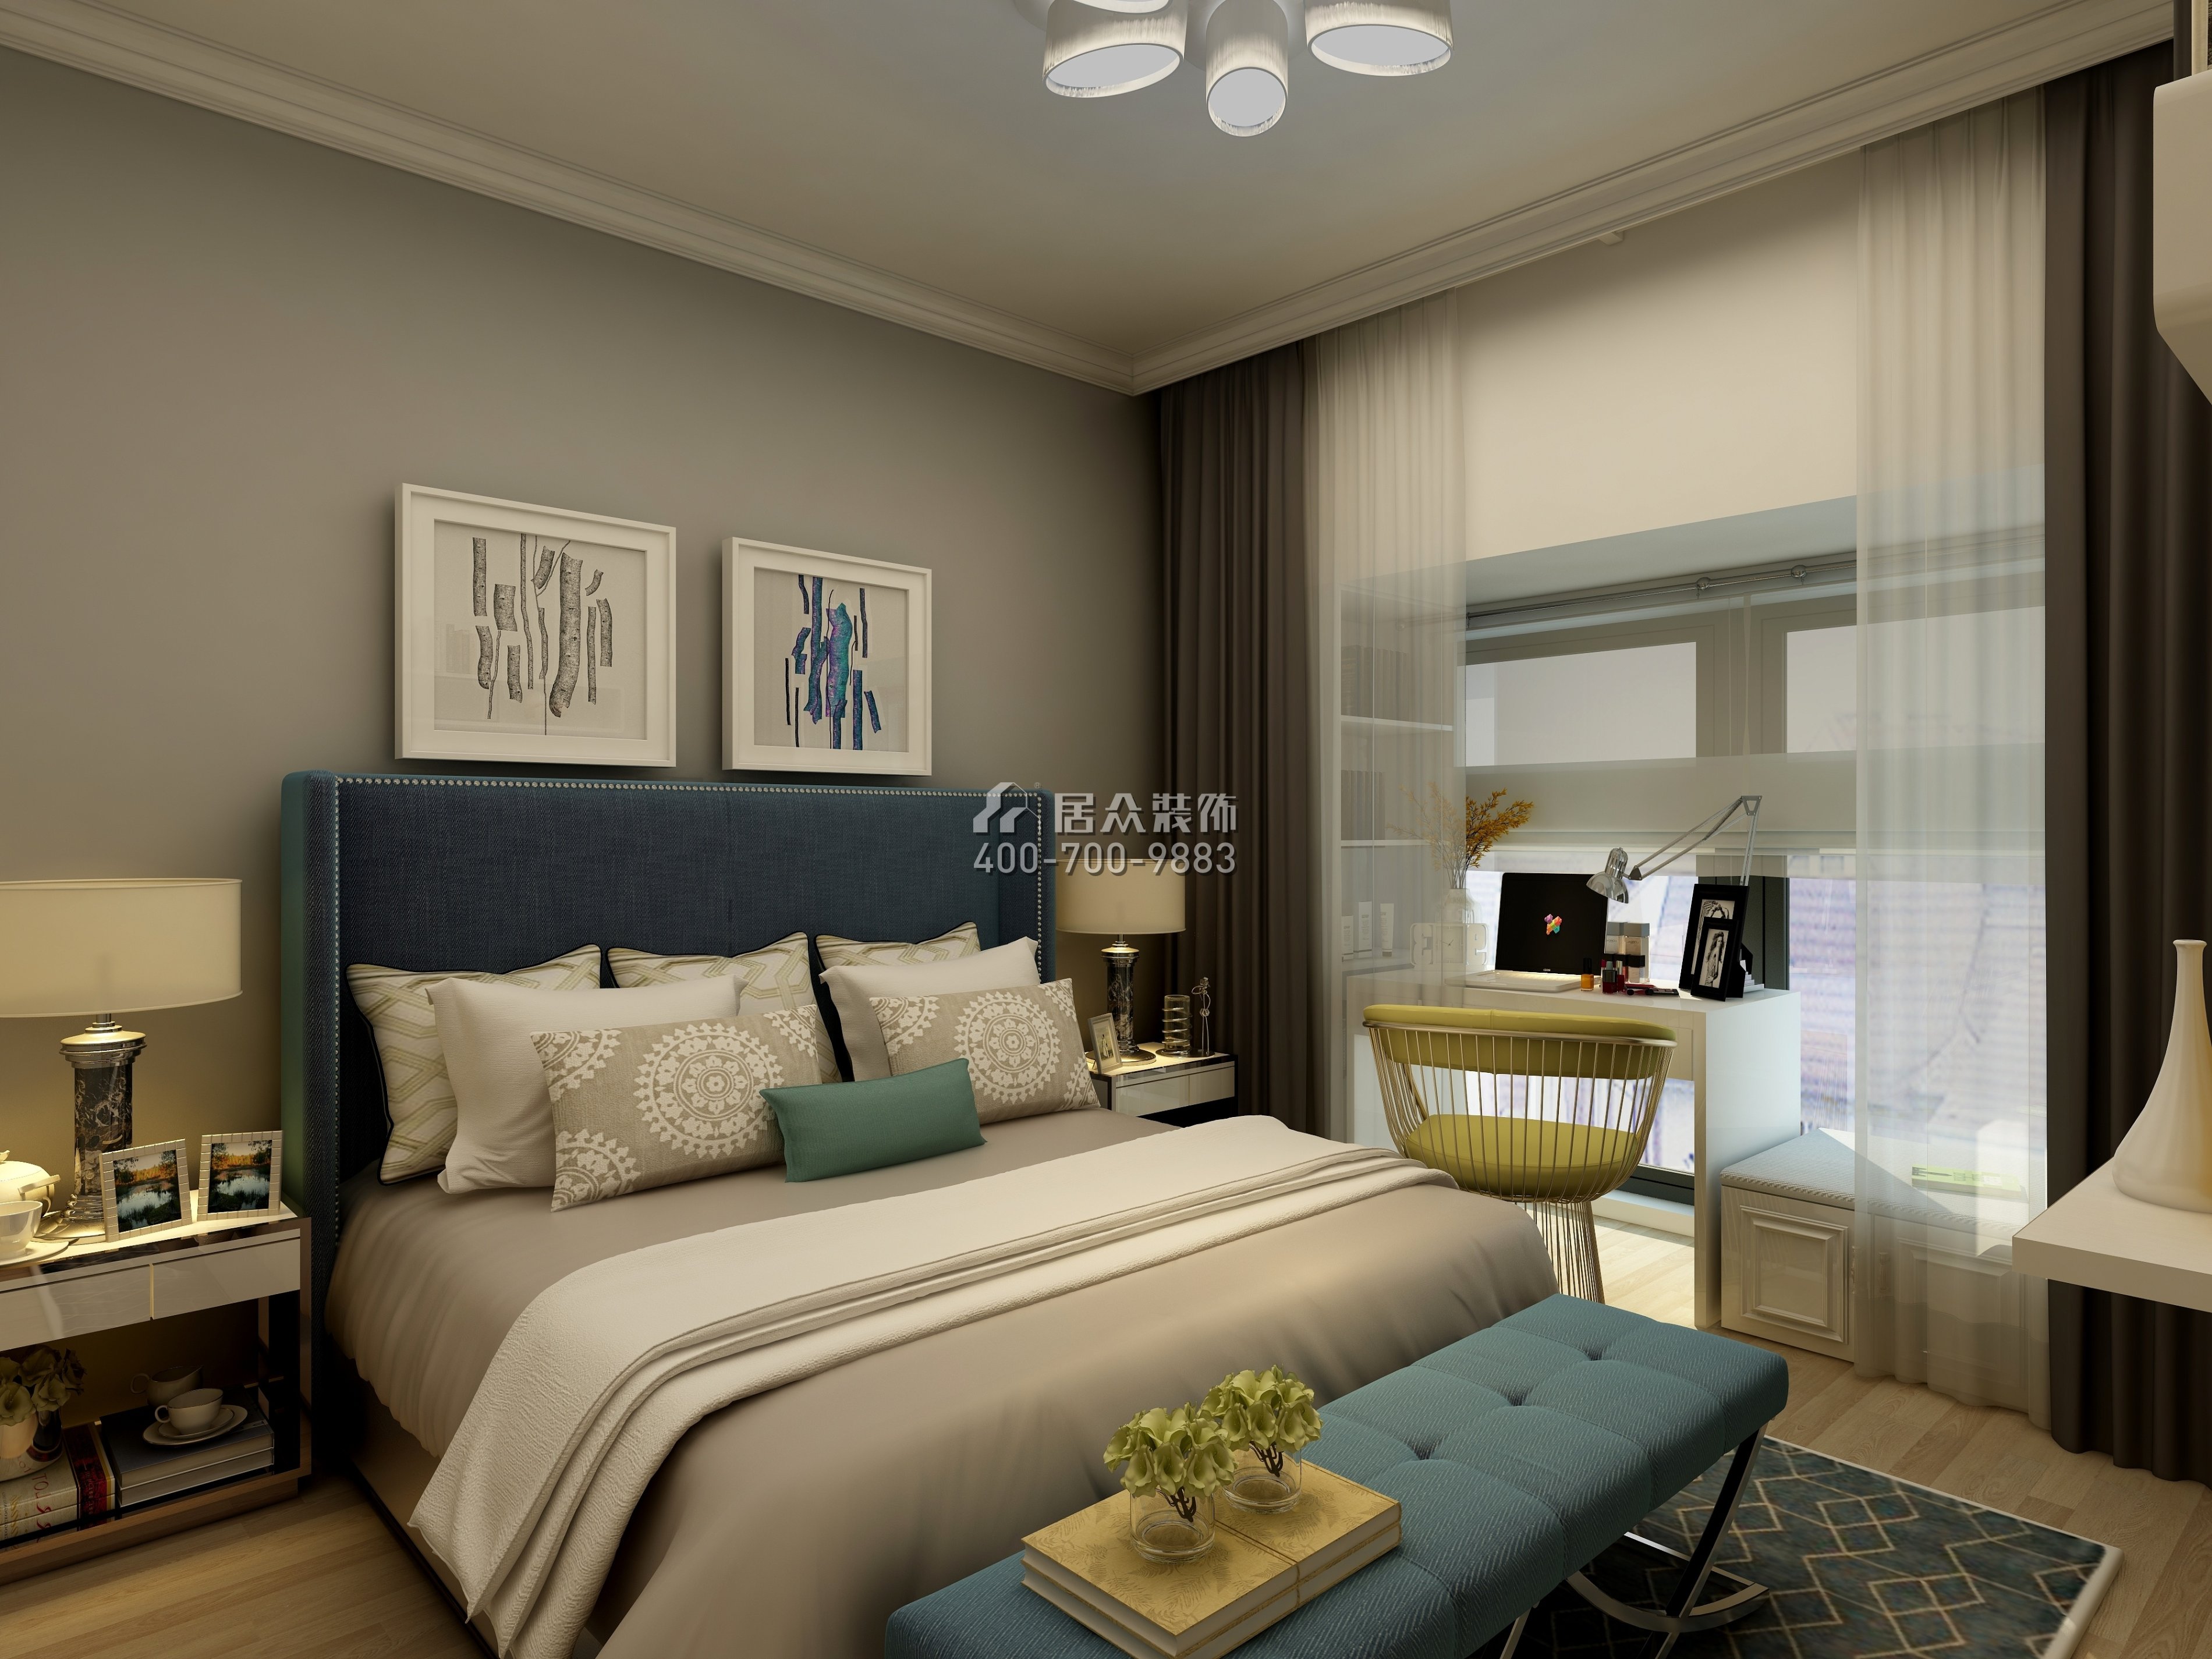 后海雅园107平方米现代简约风格平层户型卧室装修效果图